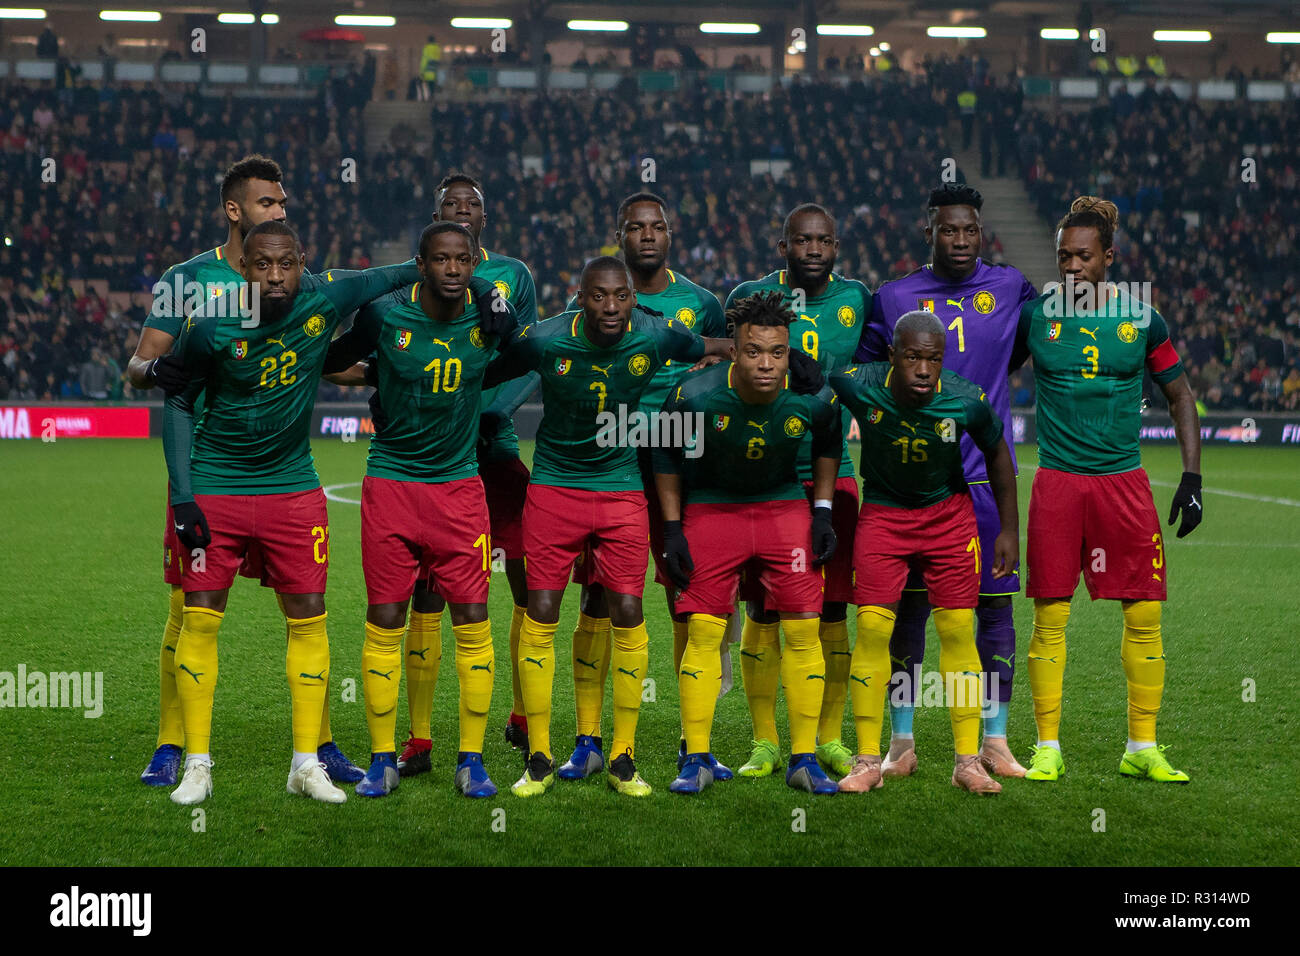 Das Stadion MK, Milton Keynes, UK. 20 Nov, 2018. Internationaler Fußball-freundlich, Brasilien gegen Kamerun; Kamerun squad Credit: Aktion plus Sport/Alamy leben Nachrichten Stockfoto